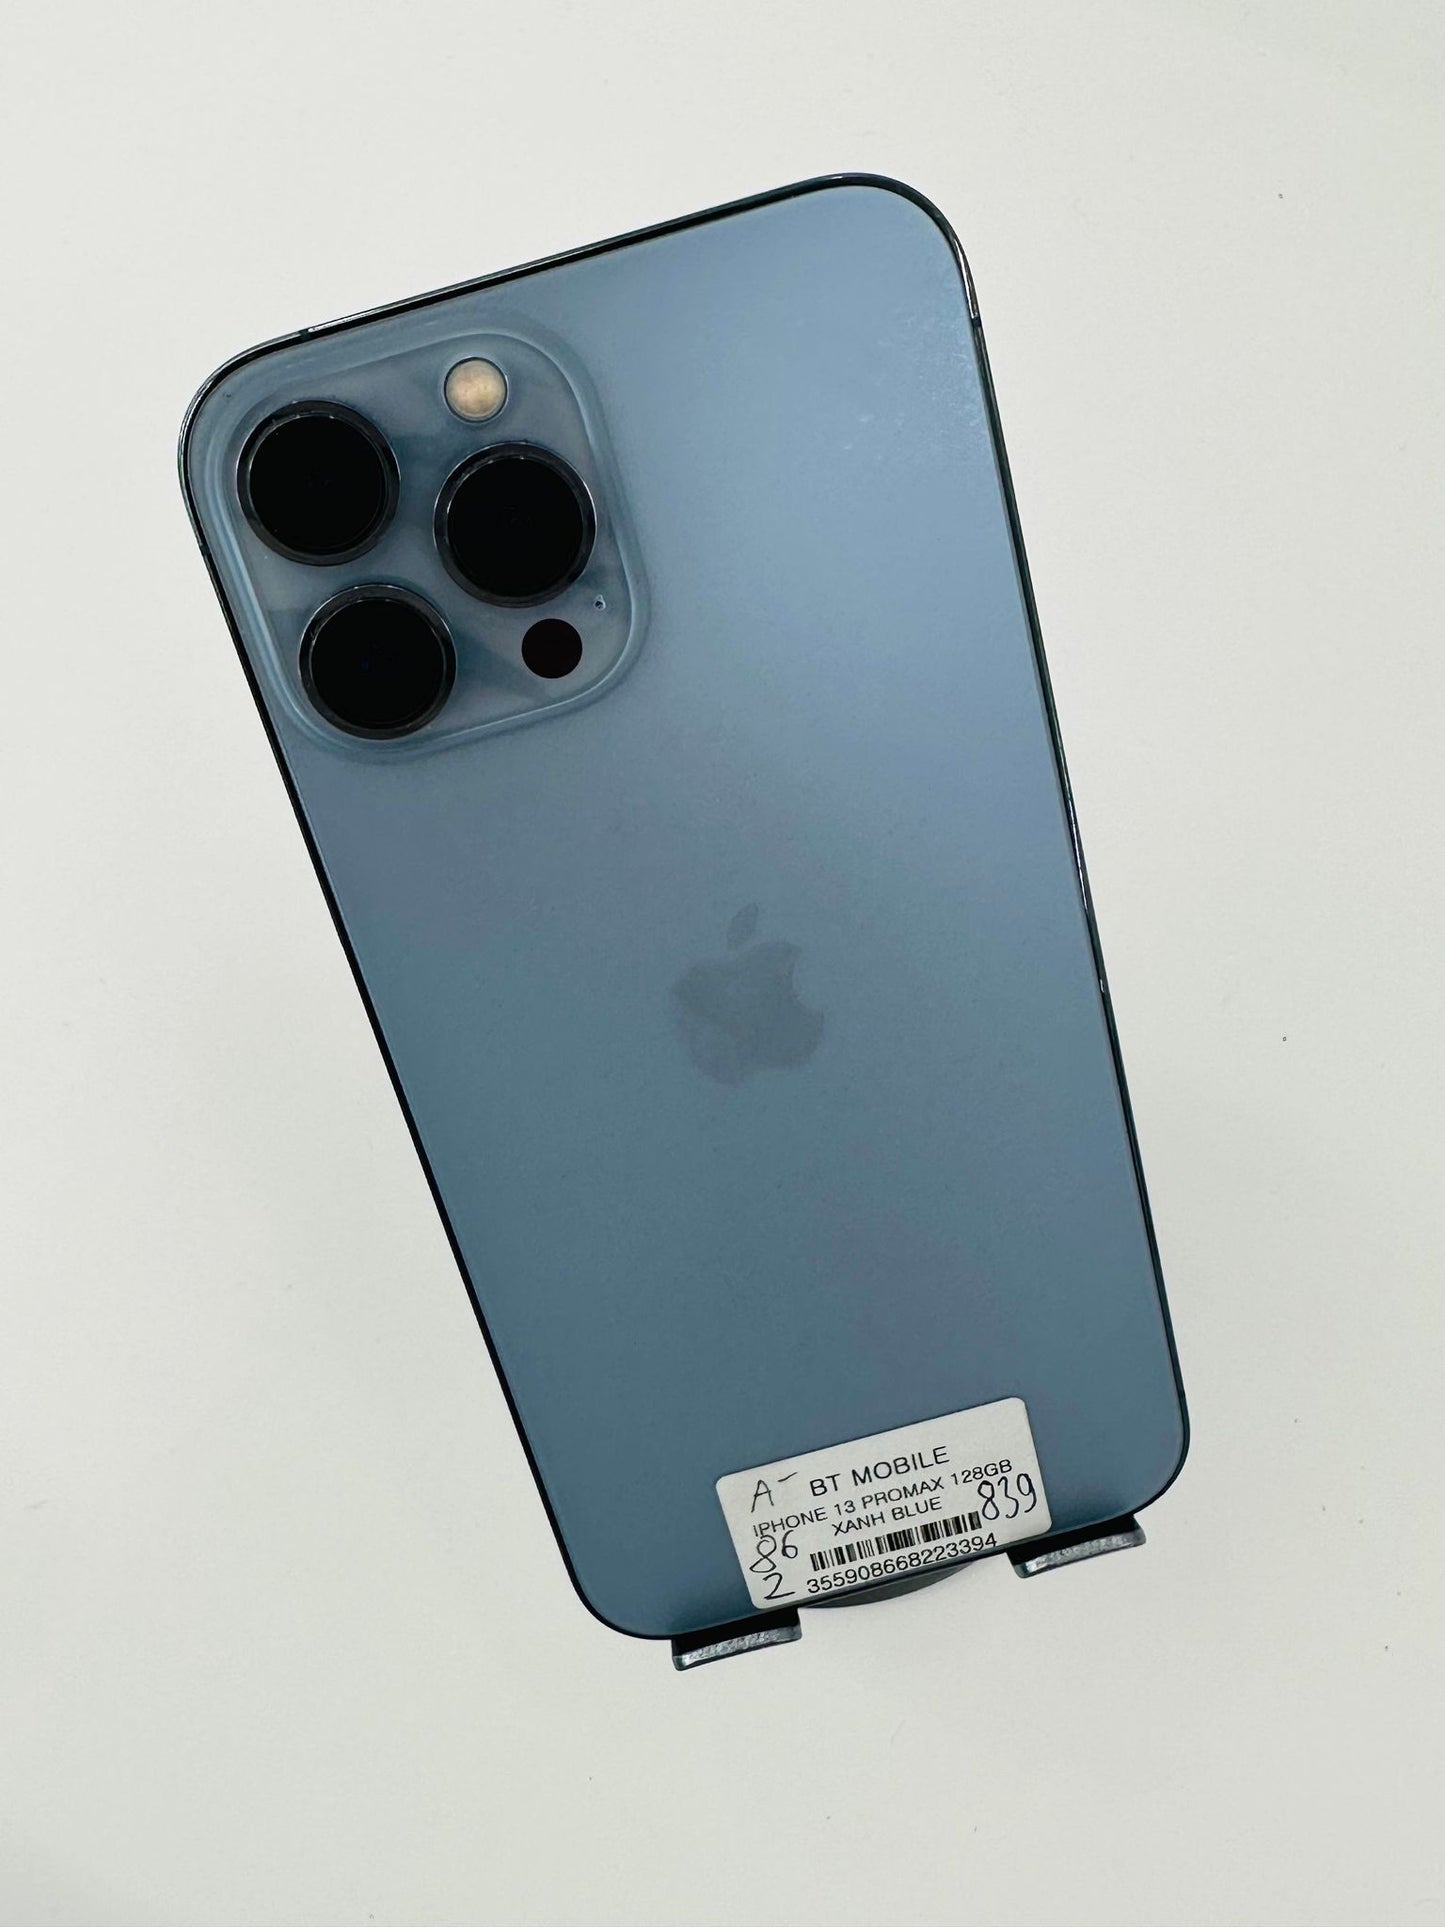 IPhone 13 ProMax 128gb Màu xanh dương, Pin zin 86%, Máy xước nhẹ, chưa qua thay sửa